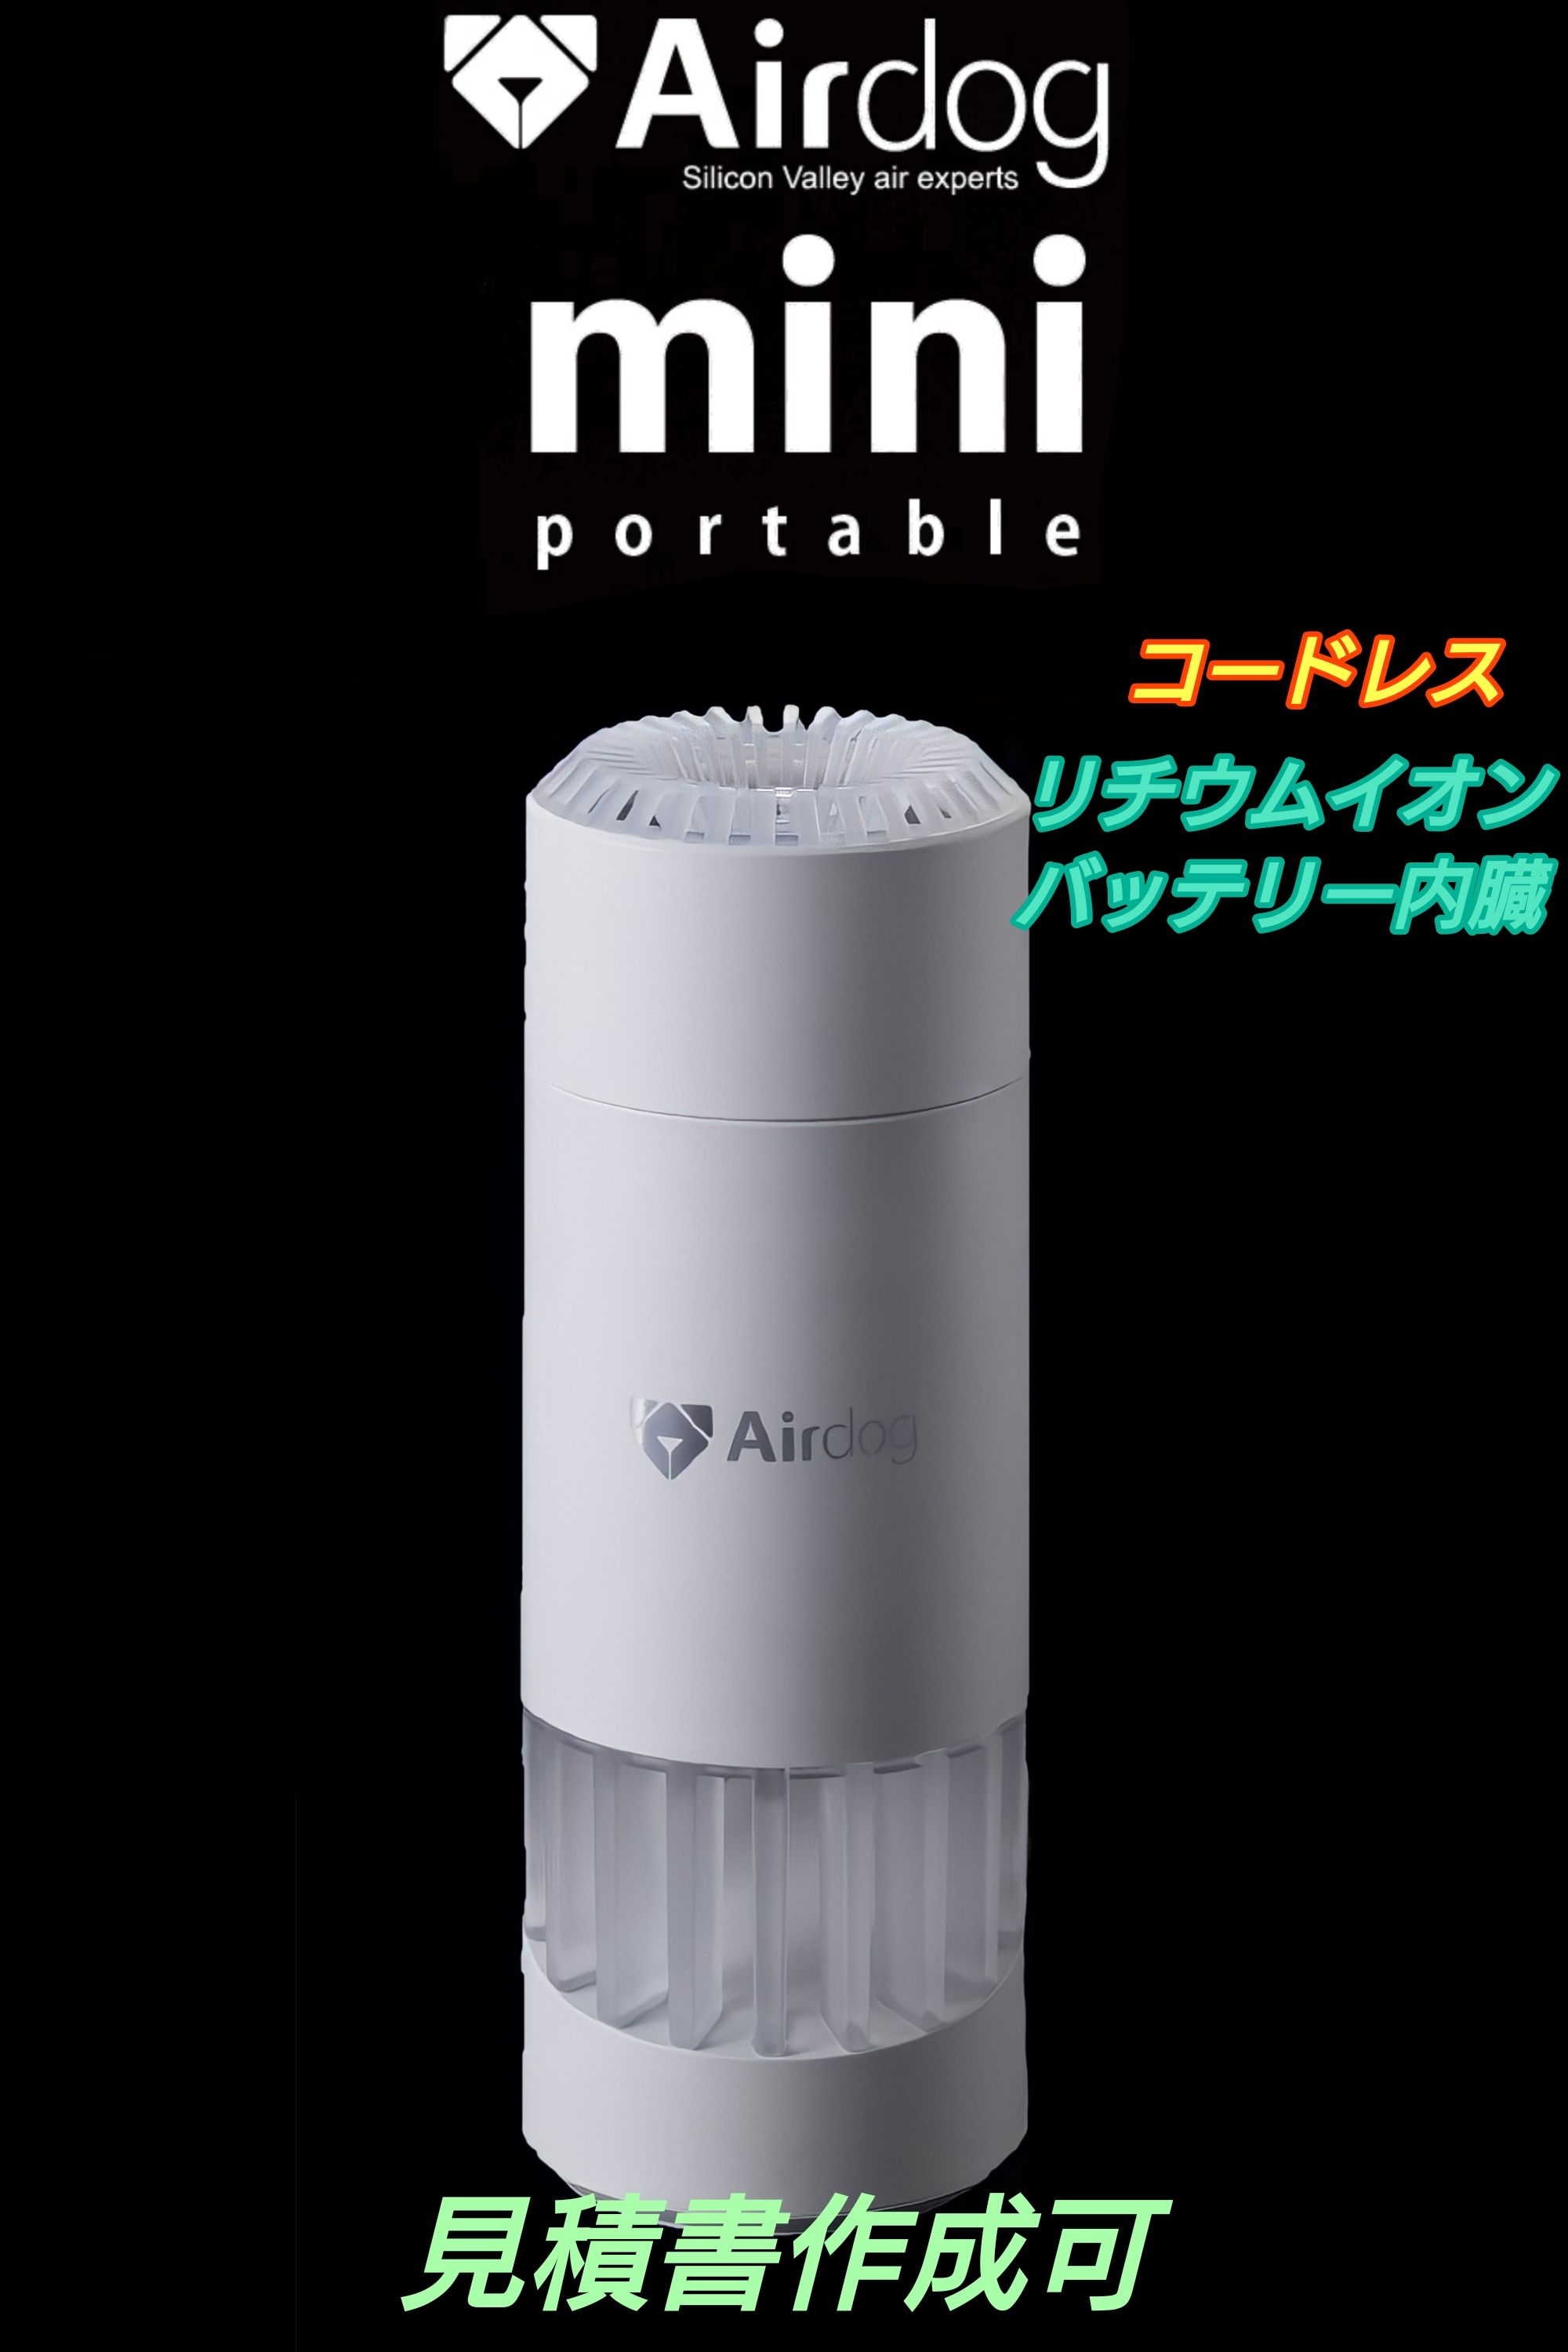 Airdog mini portable エアドッグミニ ポータブル (バッテリー内蔵) ホワイト　コードレスタイプ | 信頼・丁寧・安心のさざえ堂